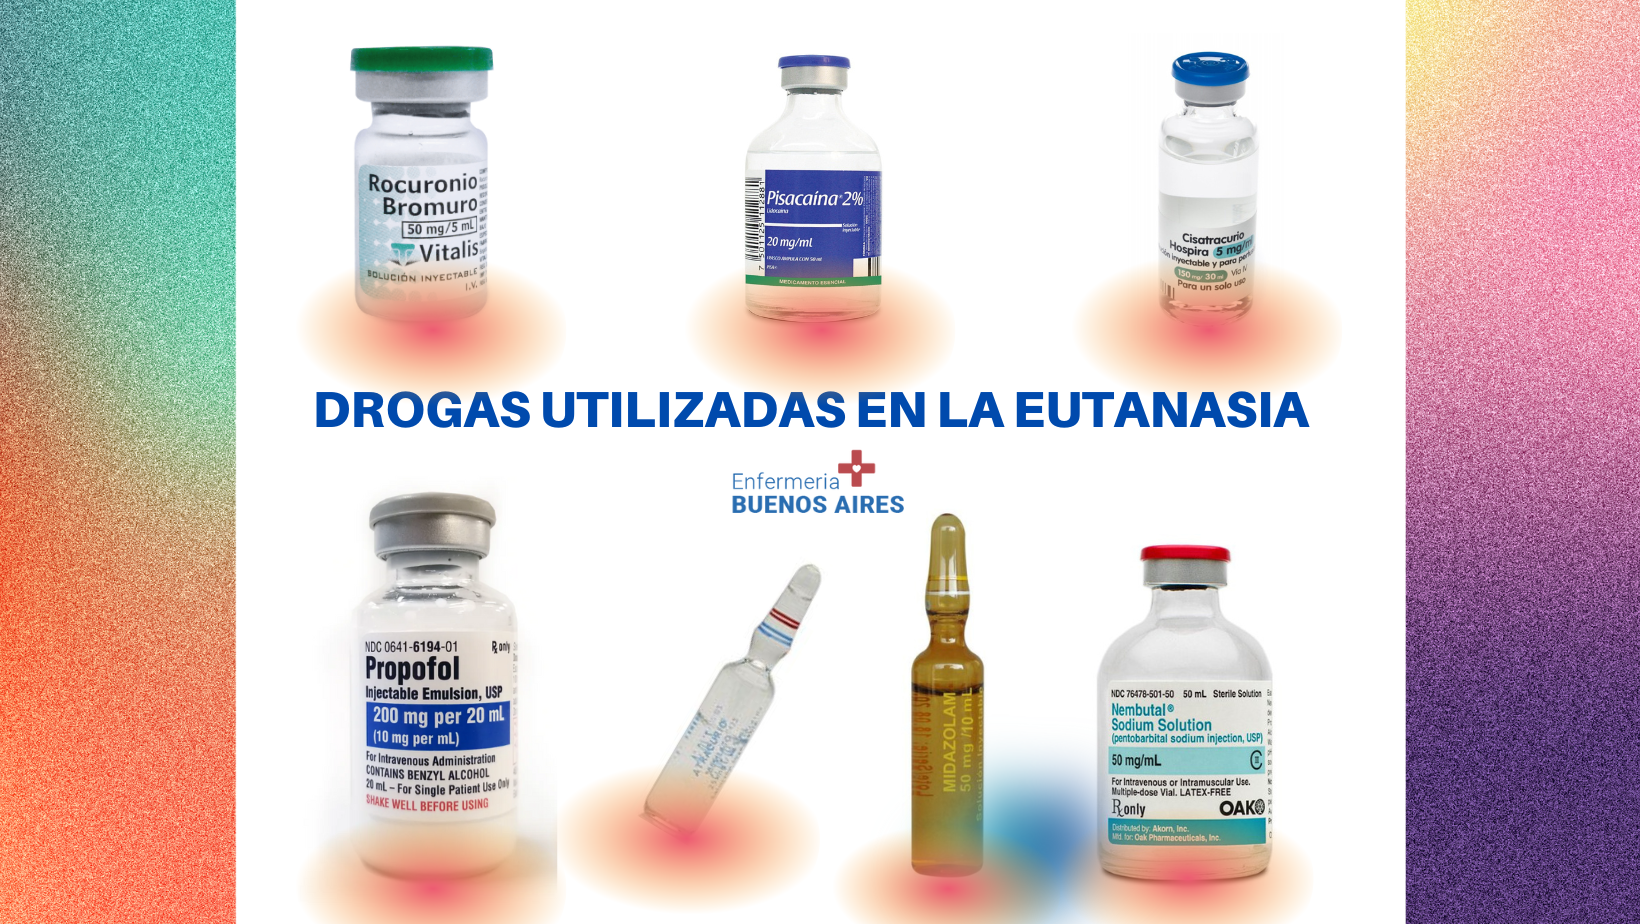 Drogas utilizadas en la eutanasia